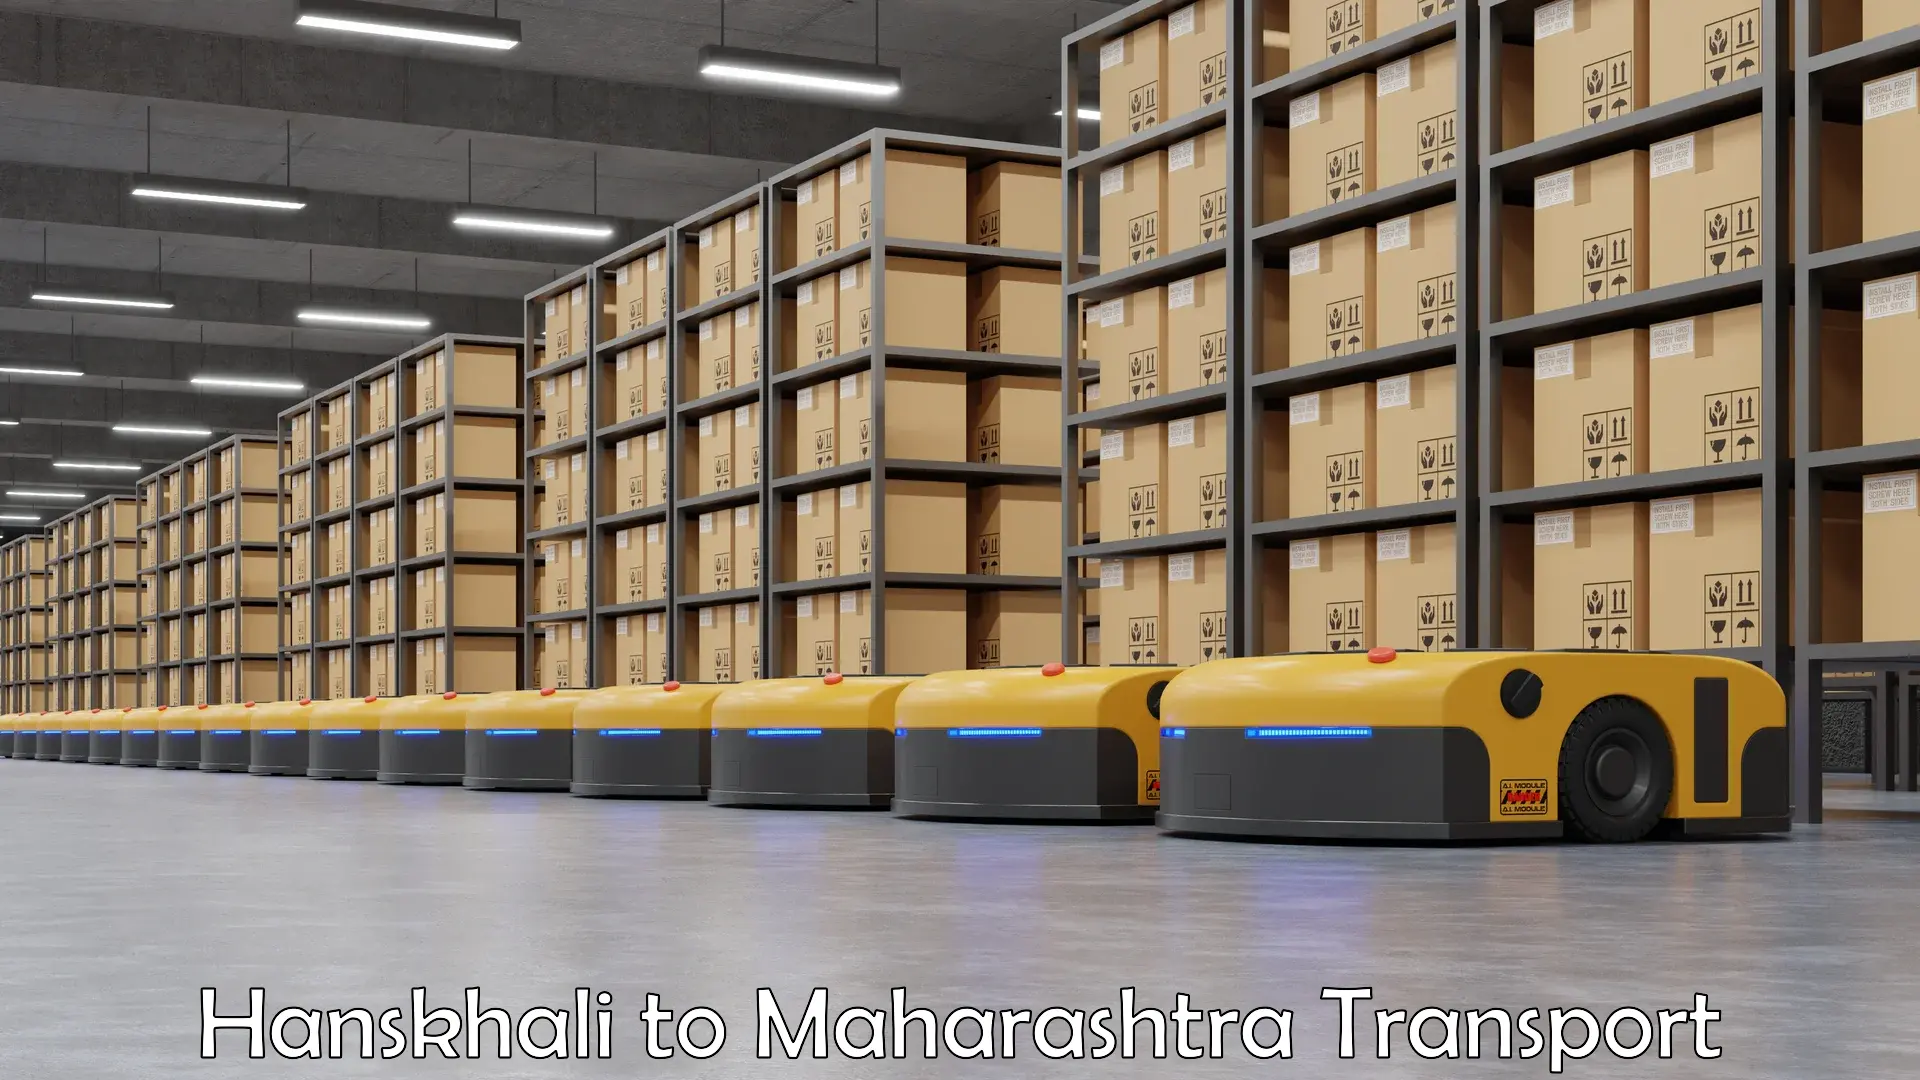 Truck transport companies in India Hanskhali to Maharashtra